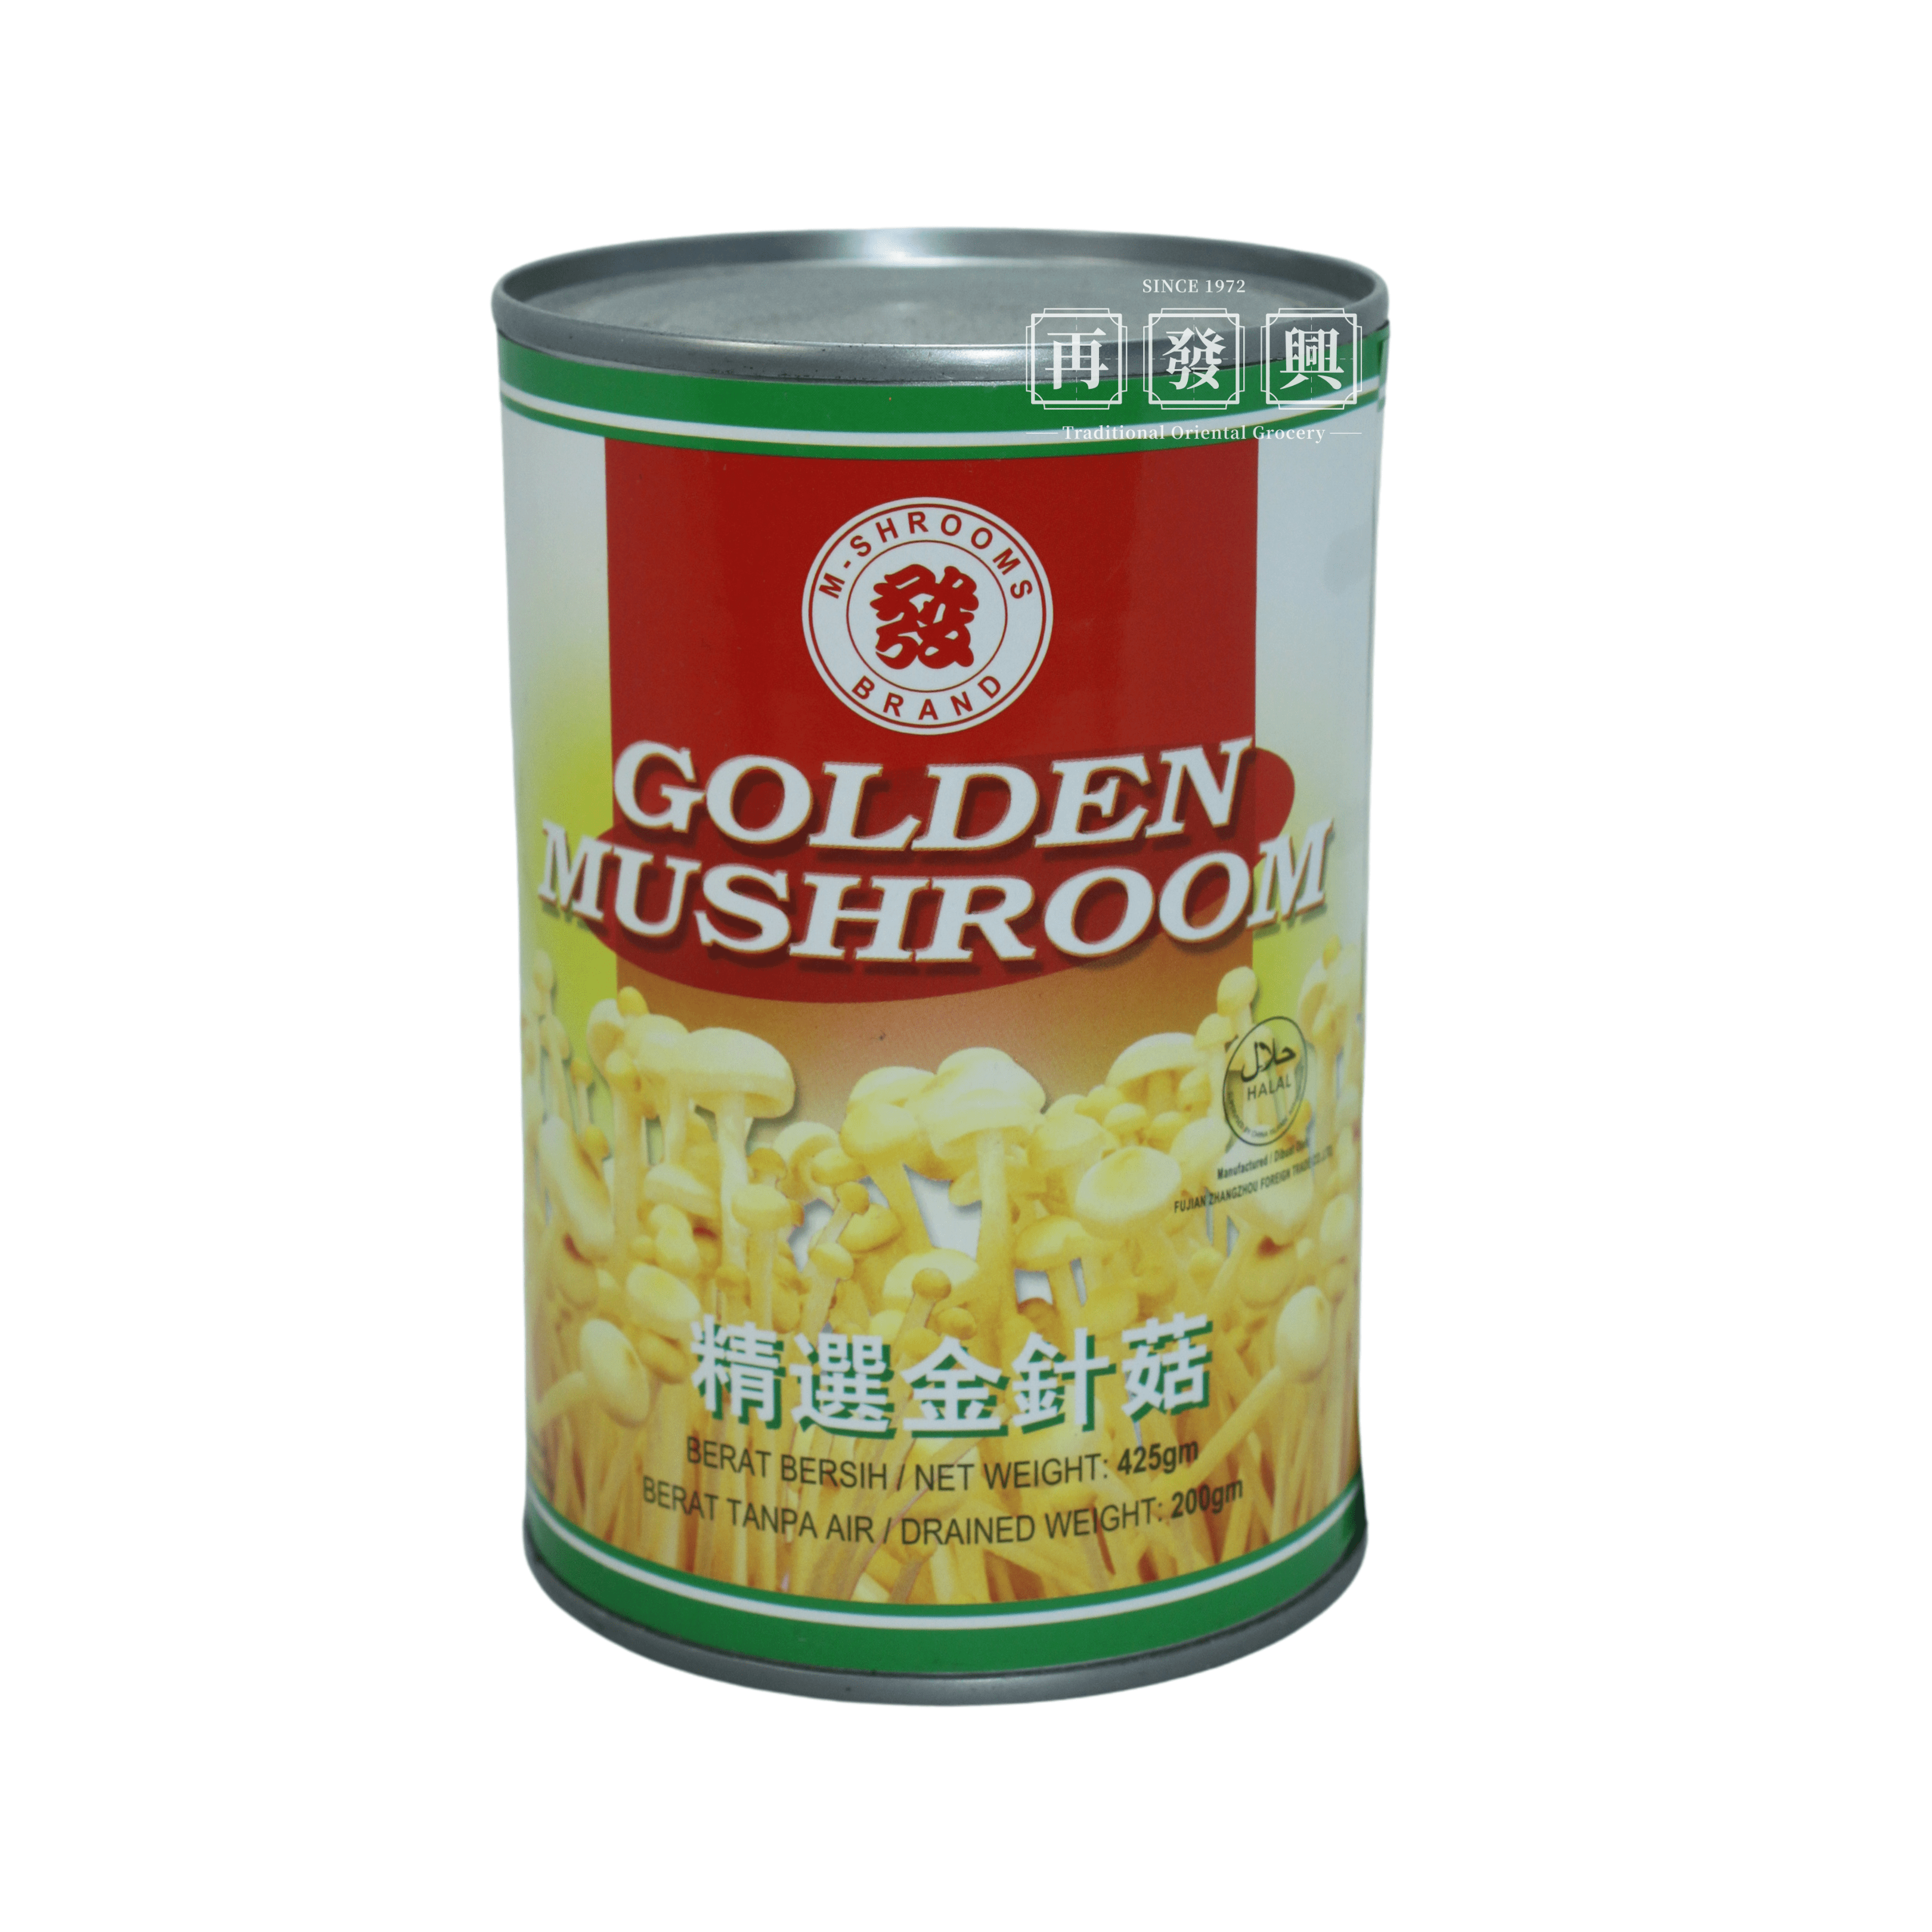 M-Shrooms Golden Mushroom 425g